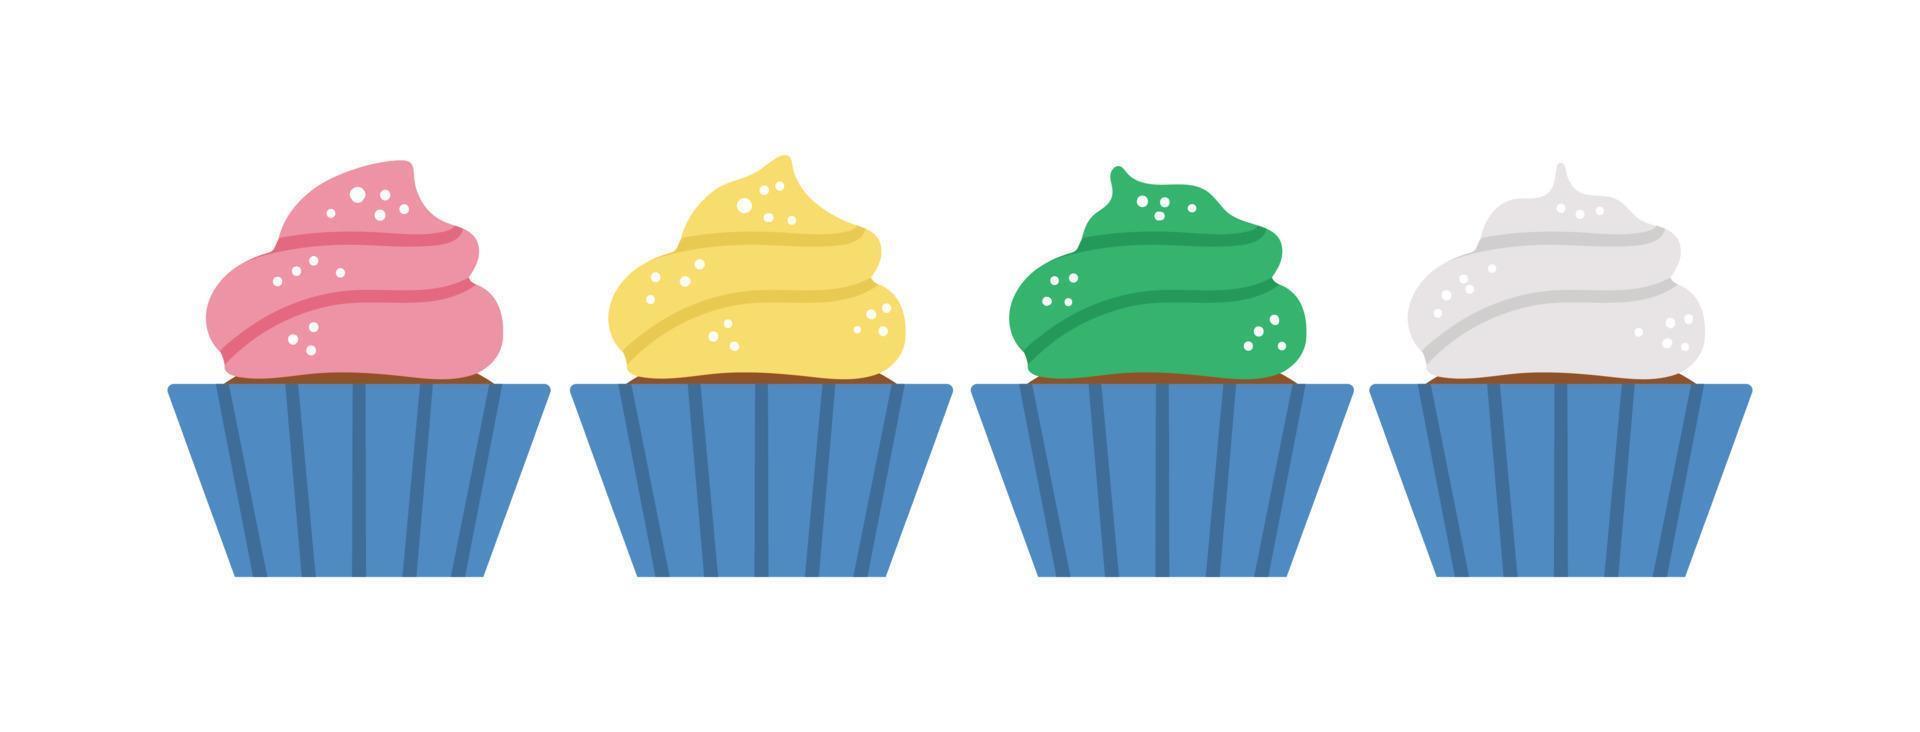 vektor födelsedag desserter. söt rolig firande cupcakes illustration för kort, affisch, print design. ljusa semesterkoncept för barn med många färgade muffins.